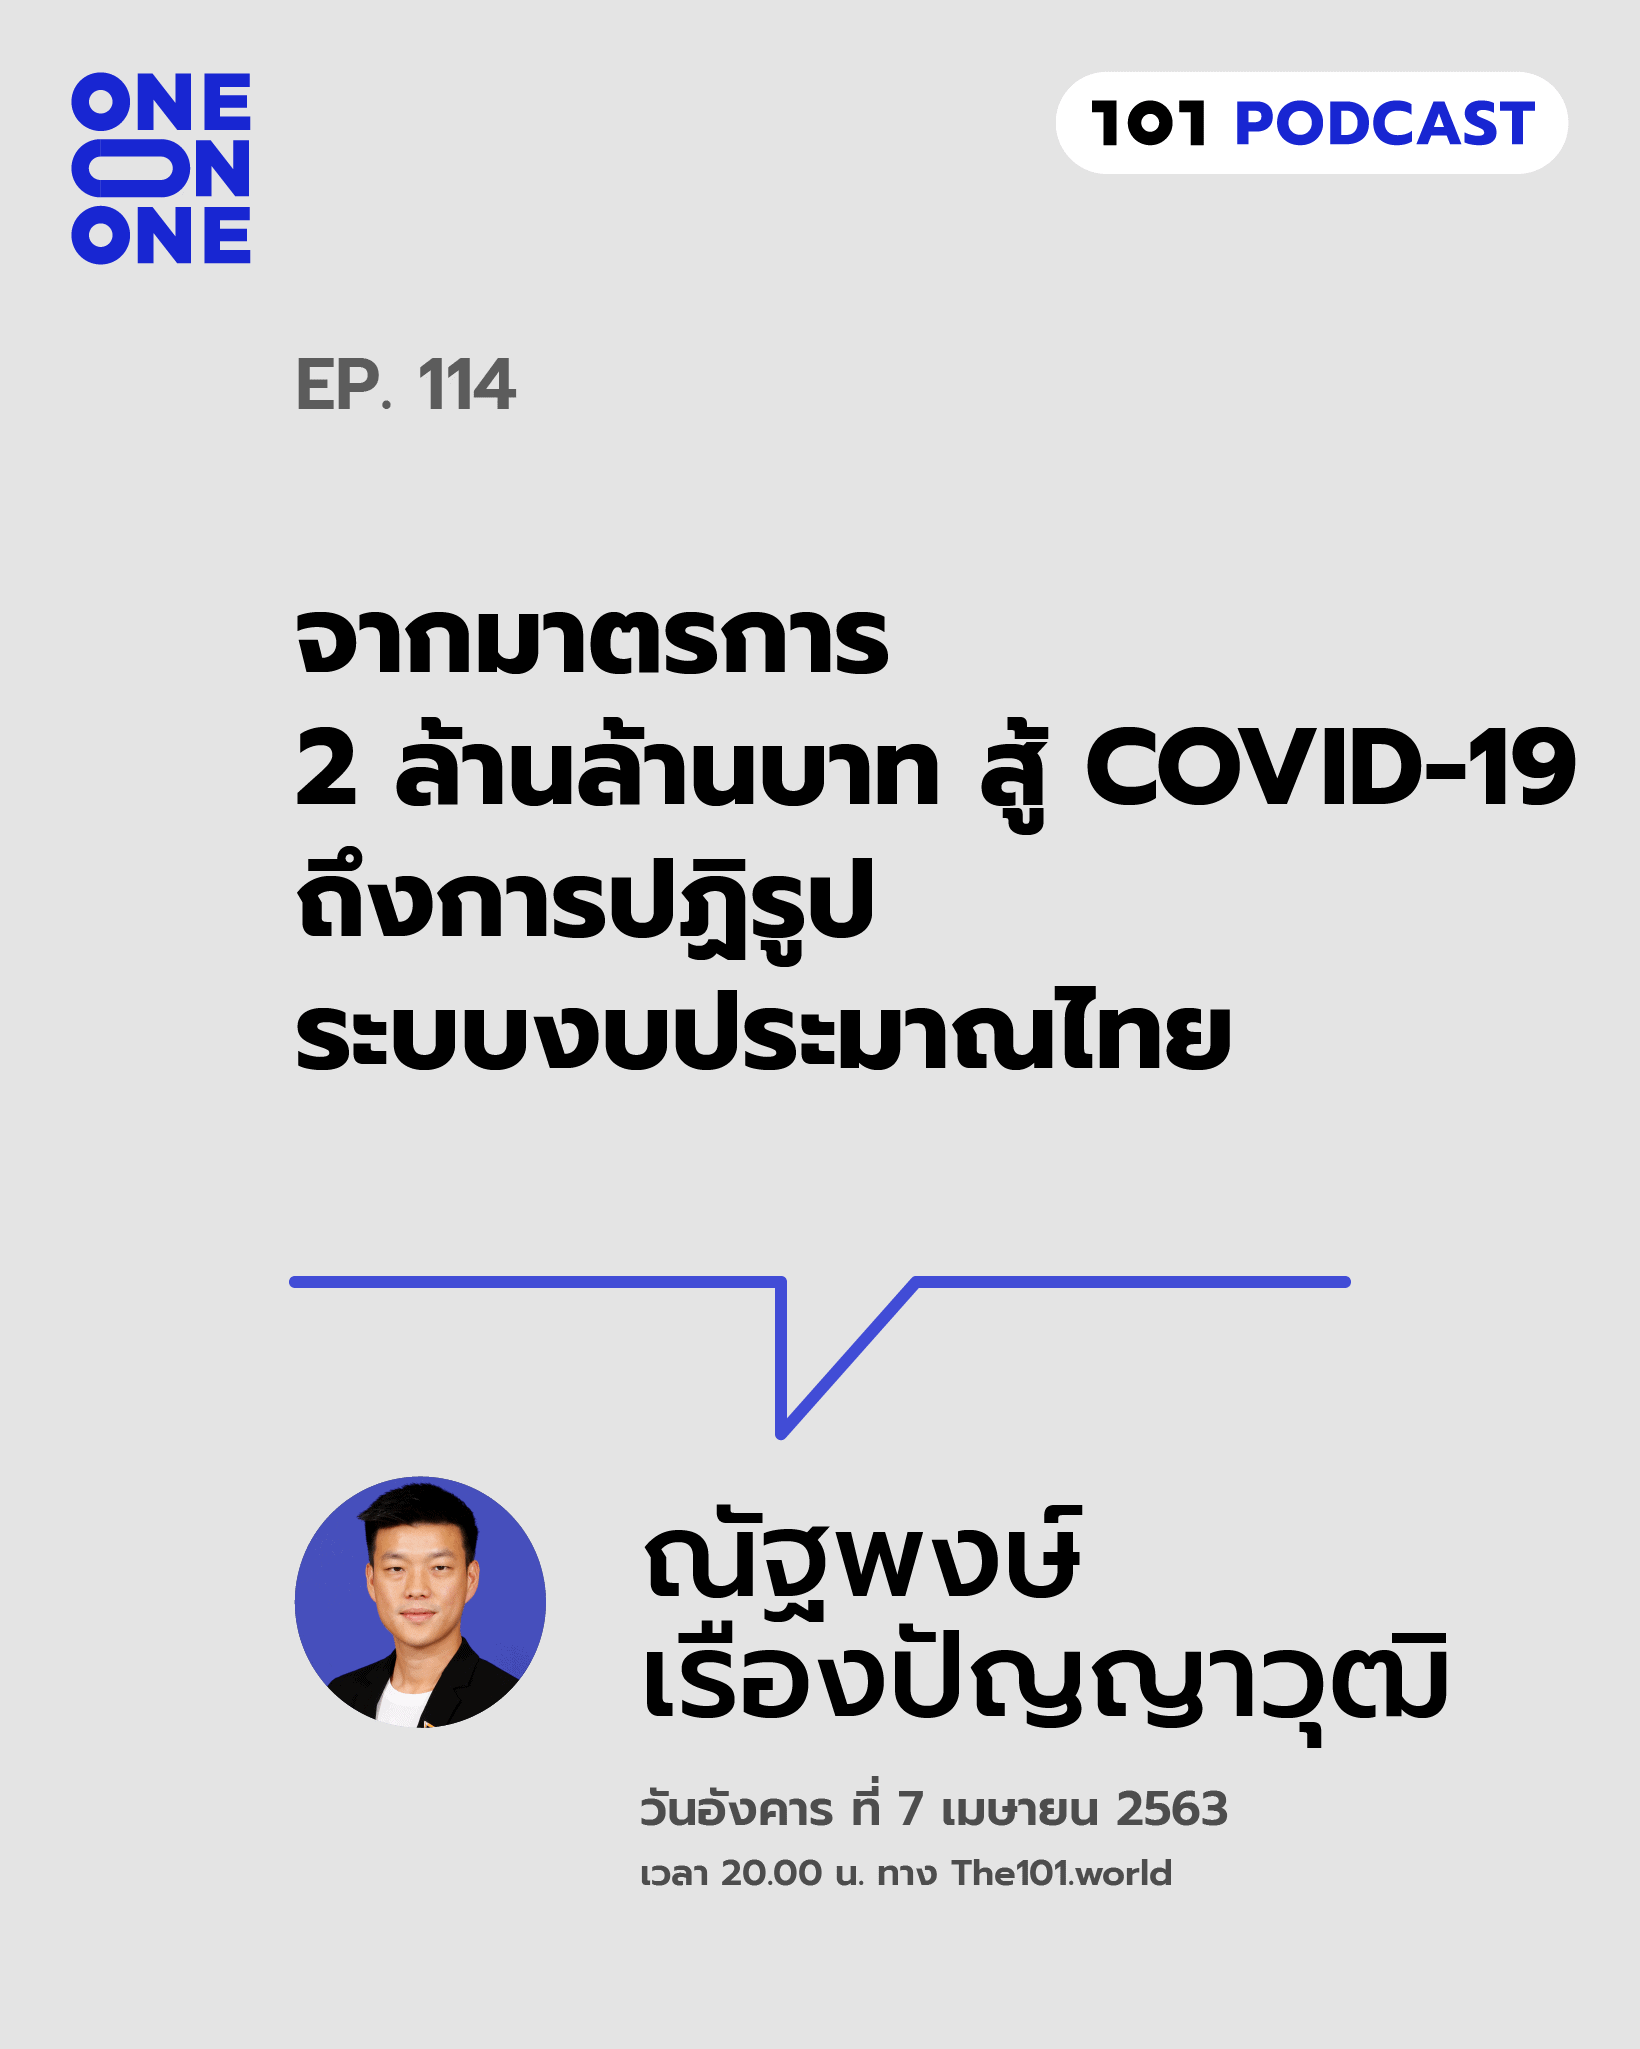 101 One-On-One Ep.114 : "จากมาตรการ 2 ล้านล้านบาท สู้ COVID-19 ถึงการปฏิรูประบบงบประมาณไทย"